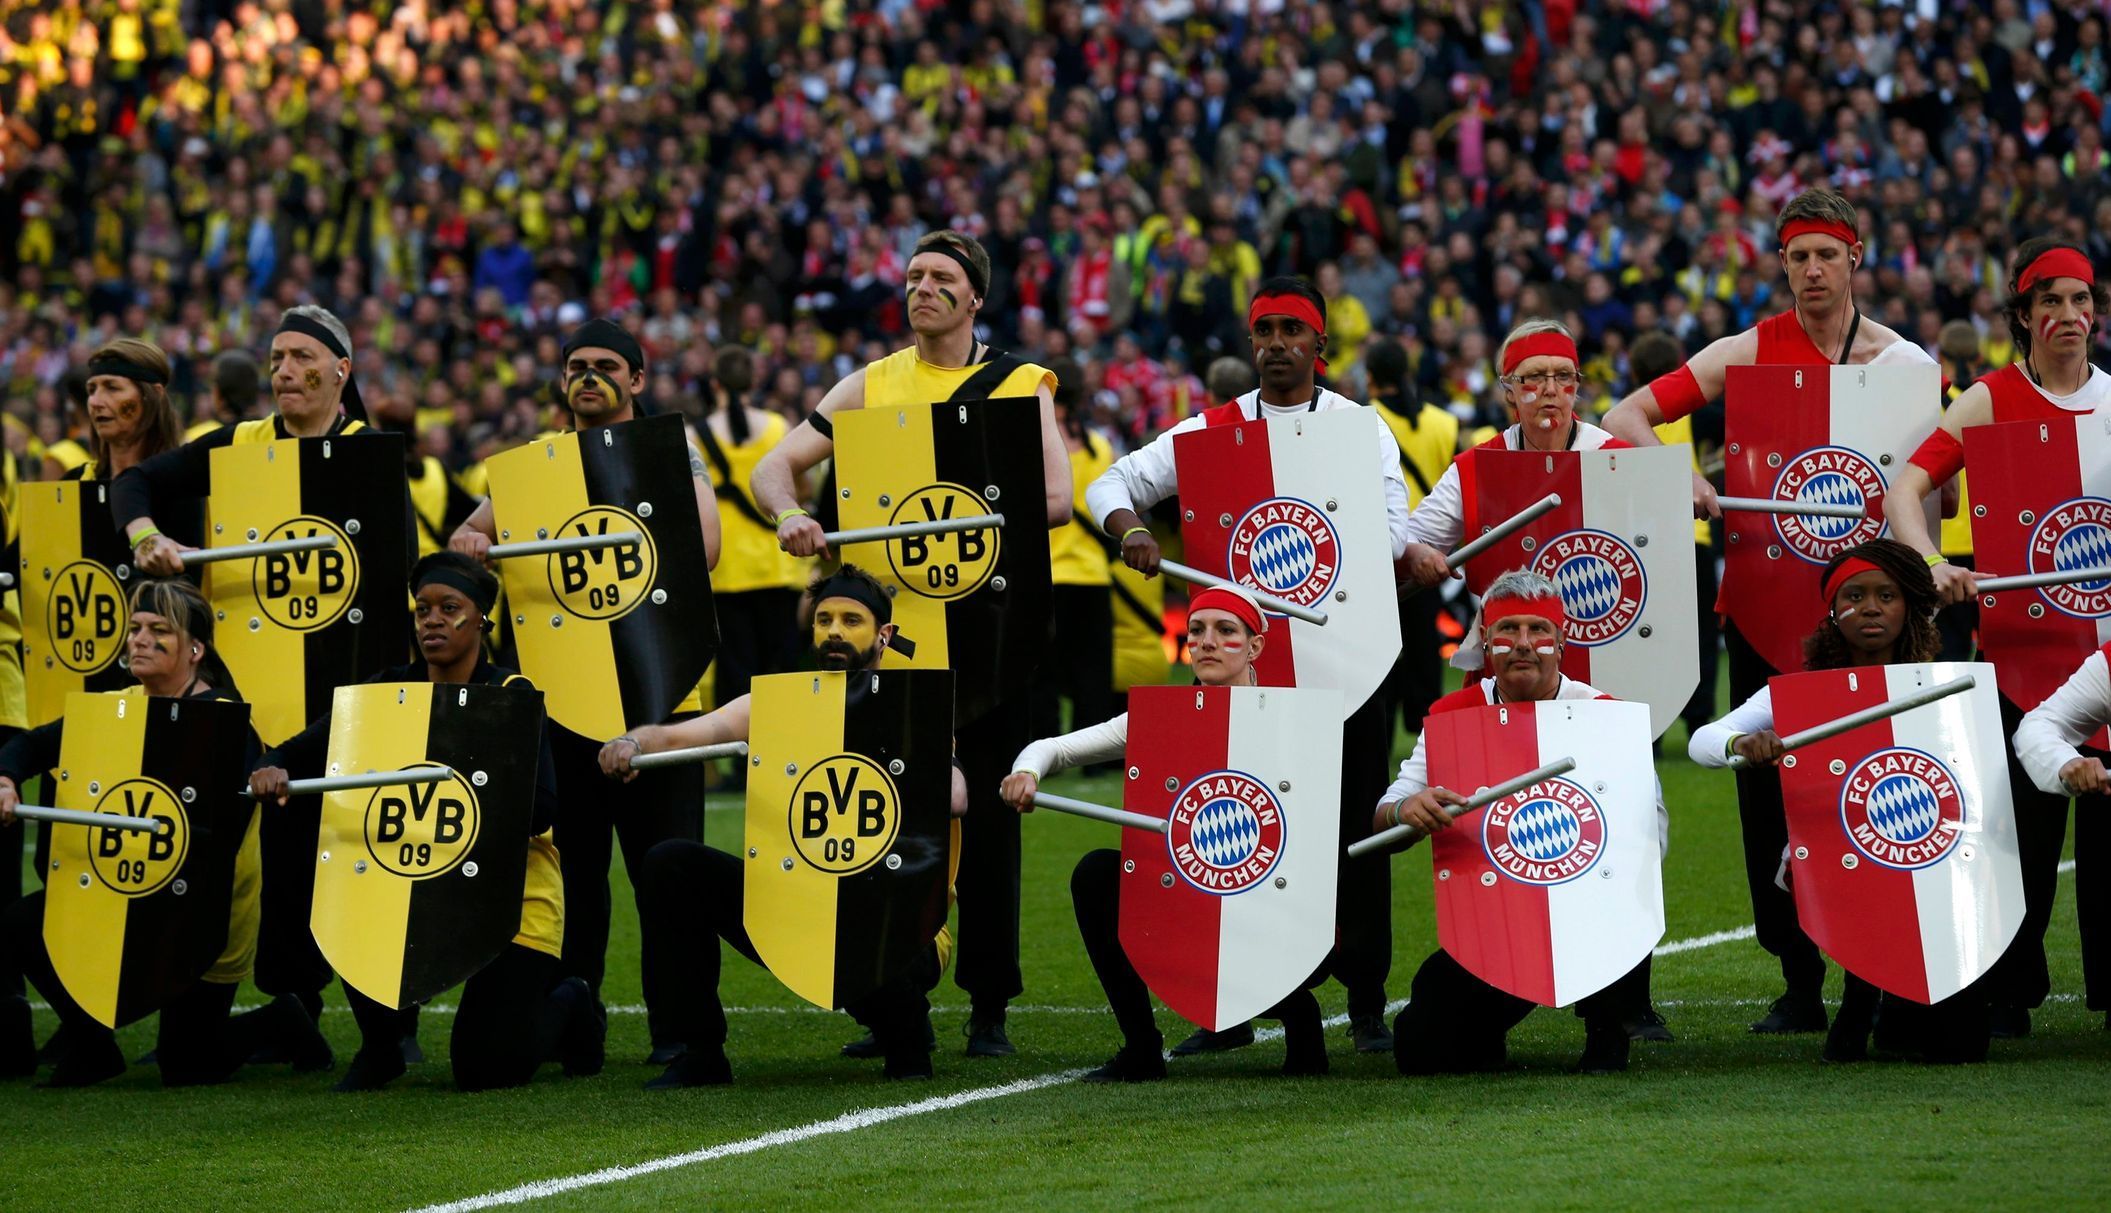 Fotbal, Liga mistrů, Bayern - Dortmund: slavnostní zahájení